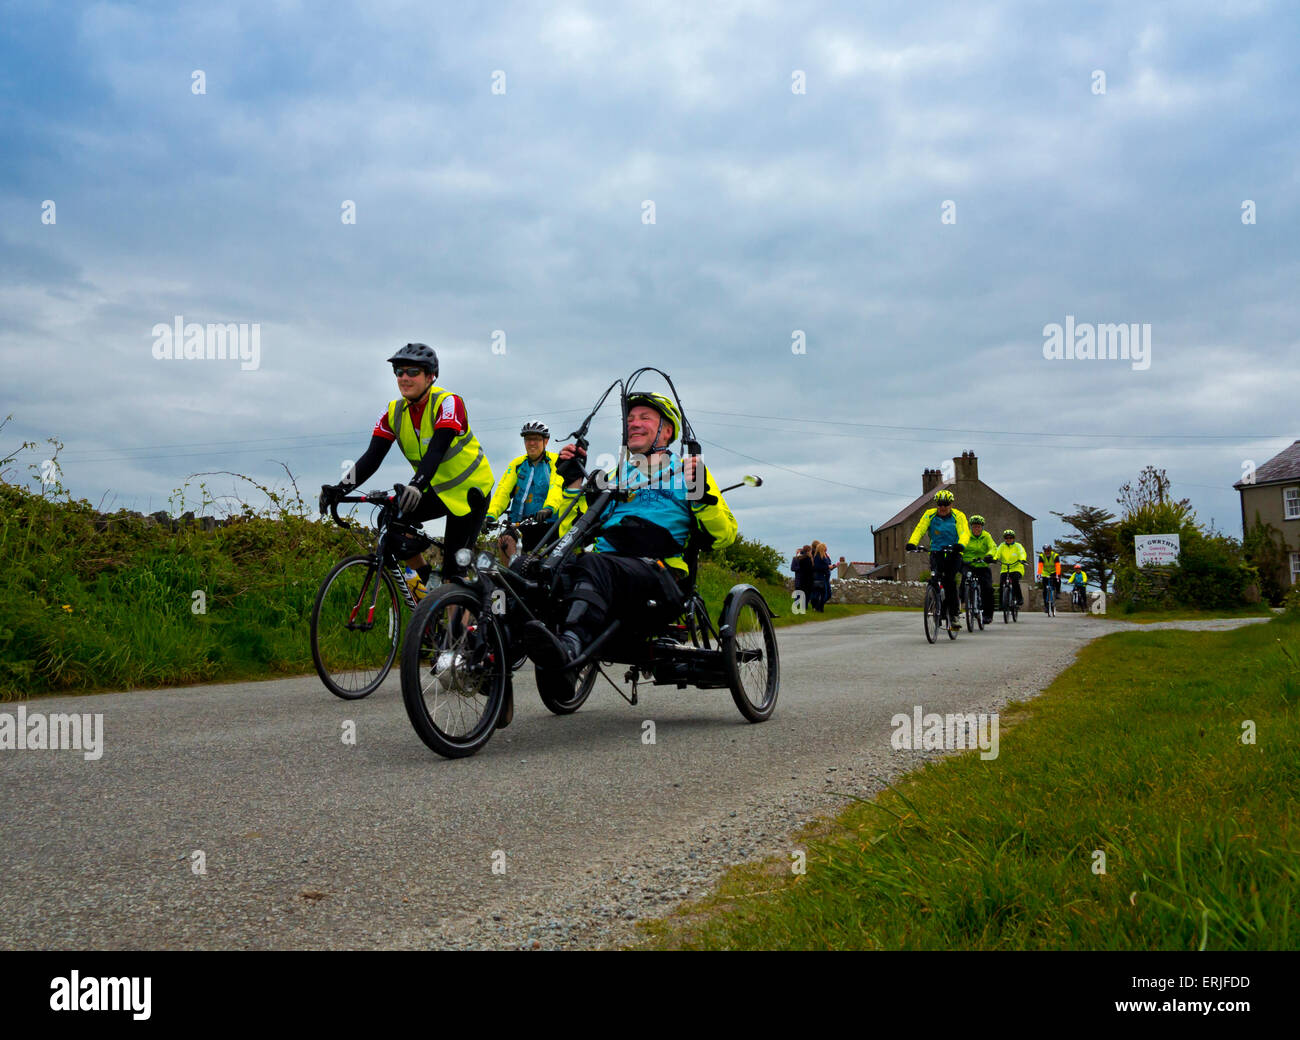 Les cyclistes participant à un organisme de bienfaisance parrainé en vélo à Anglesey au nord du Pays de Galles UK avec les vélos de course et un cycle à trois roues Banque D'Images